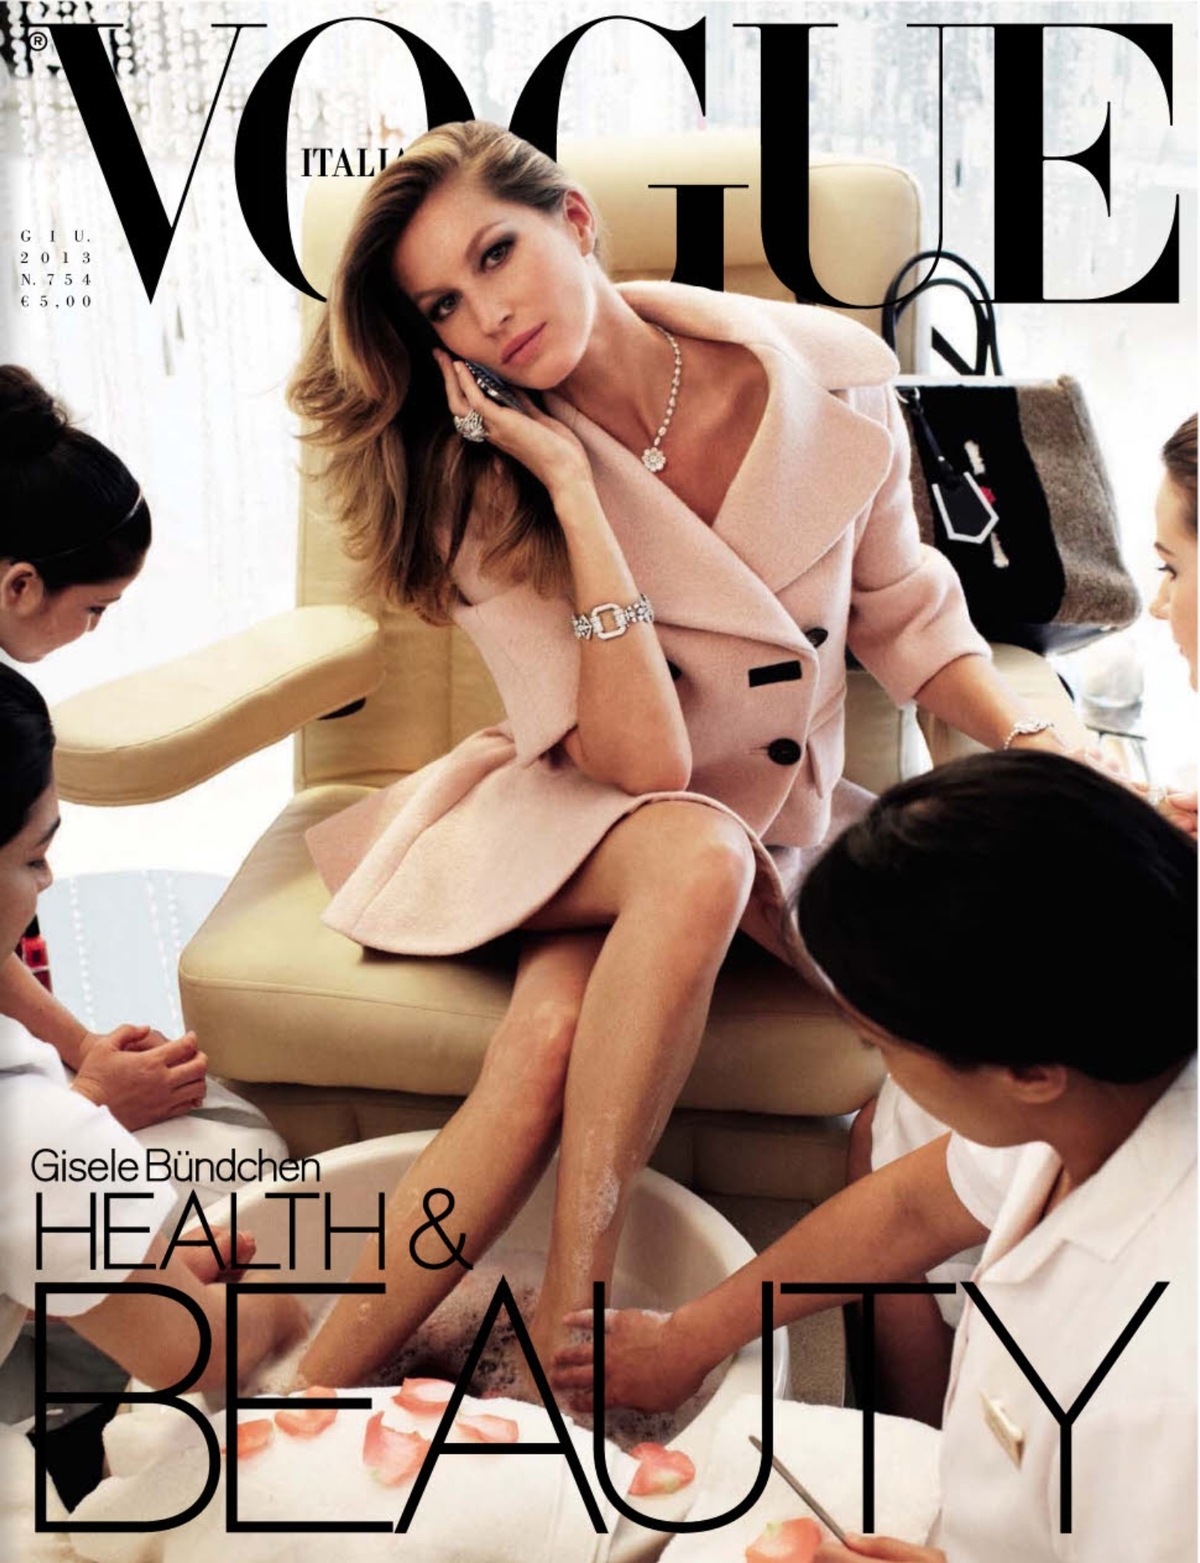 Жизель Бундхен в журнале Vogue Италия. Июнь 2013